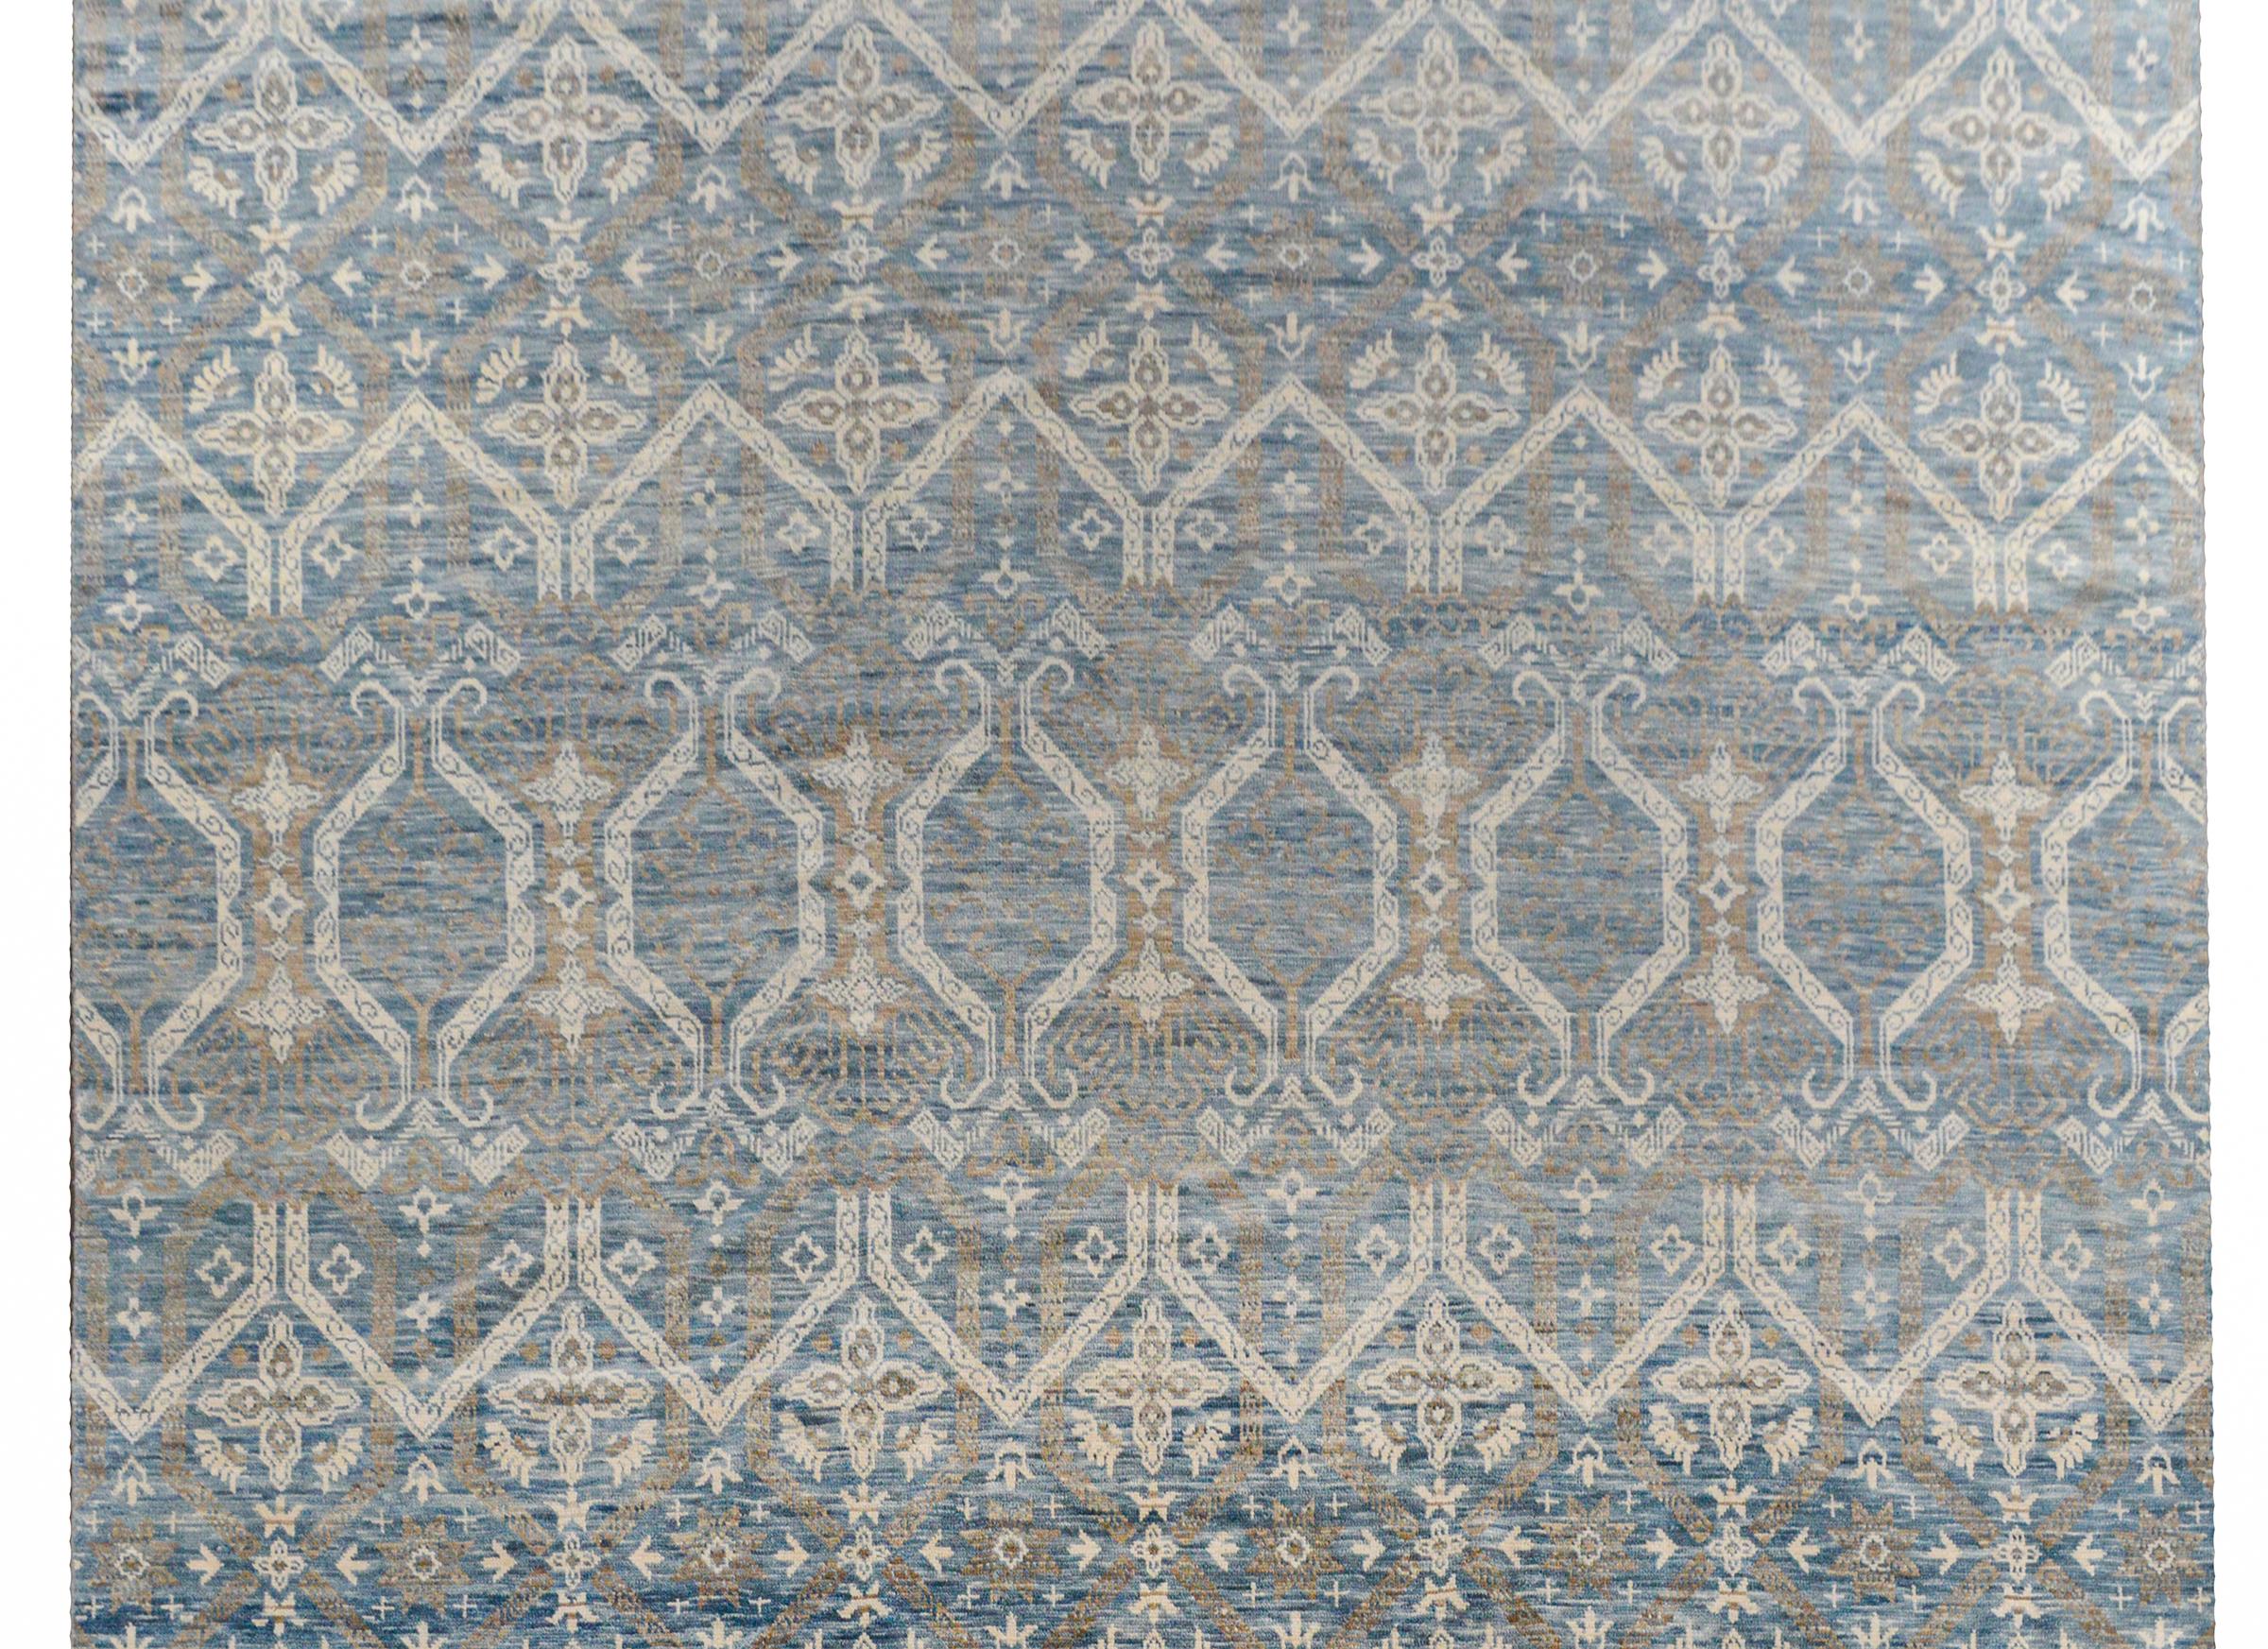 Ein ruhiger, zeitgenössischer, handgewebter indischer Teppich mit einem Gitter- und Blumenmuster in wunderschönen Blau- und Cremetönen.